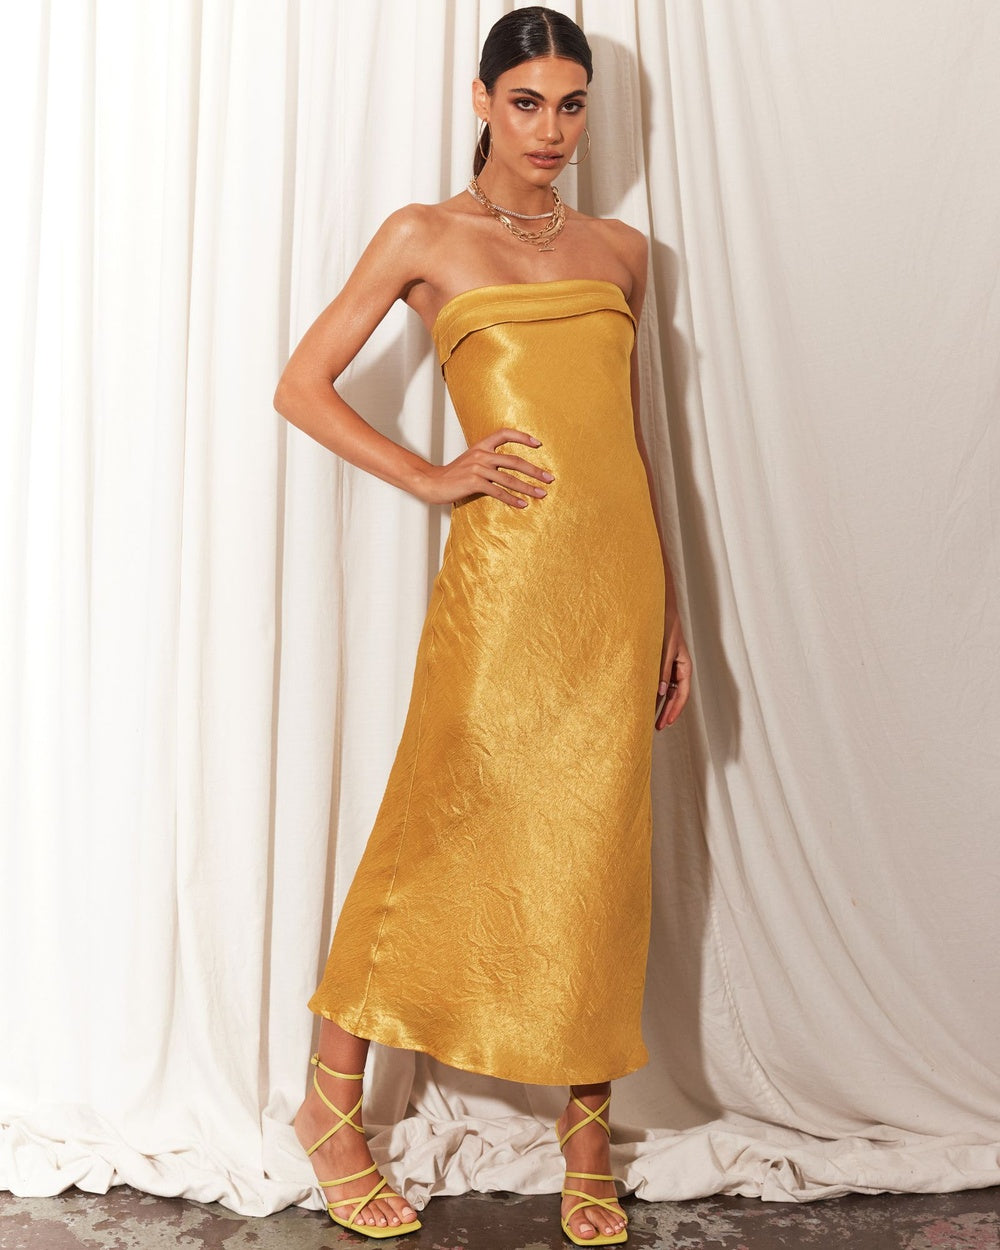 Alternate Gold Dress: Sleeveless slip dress.